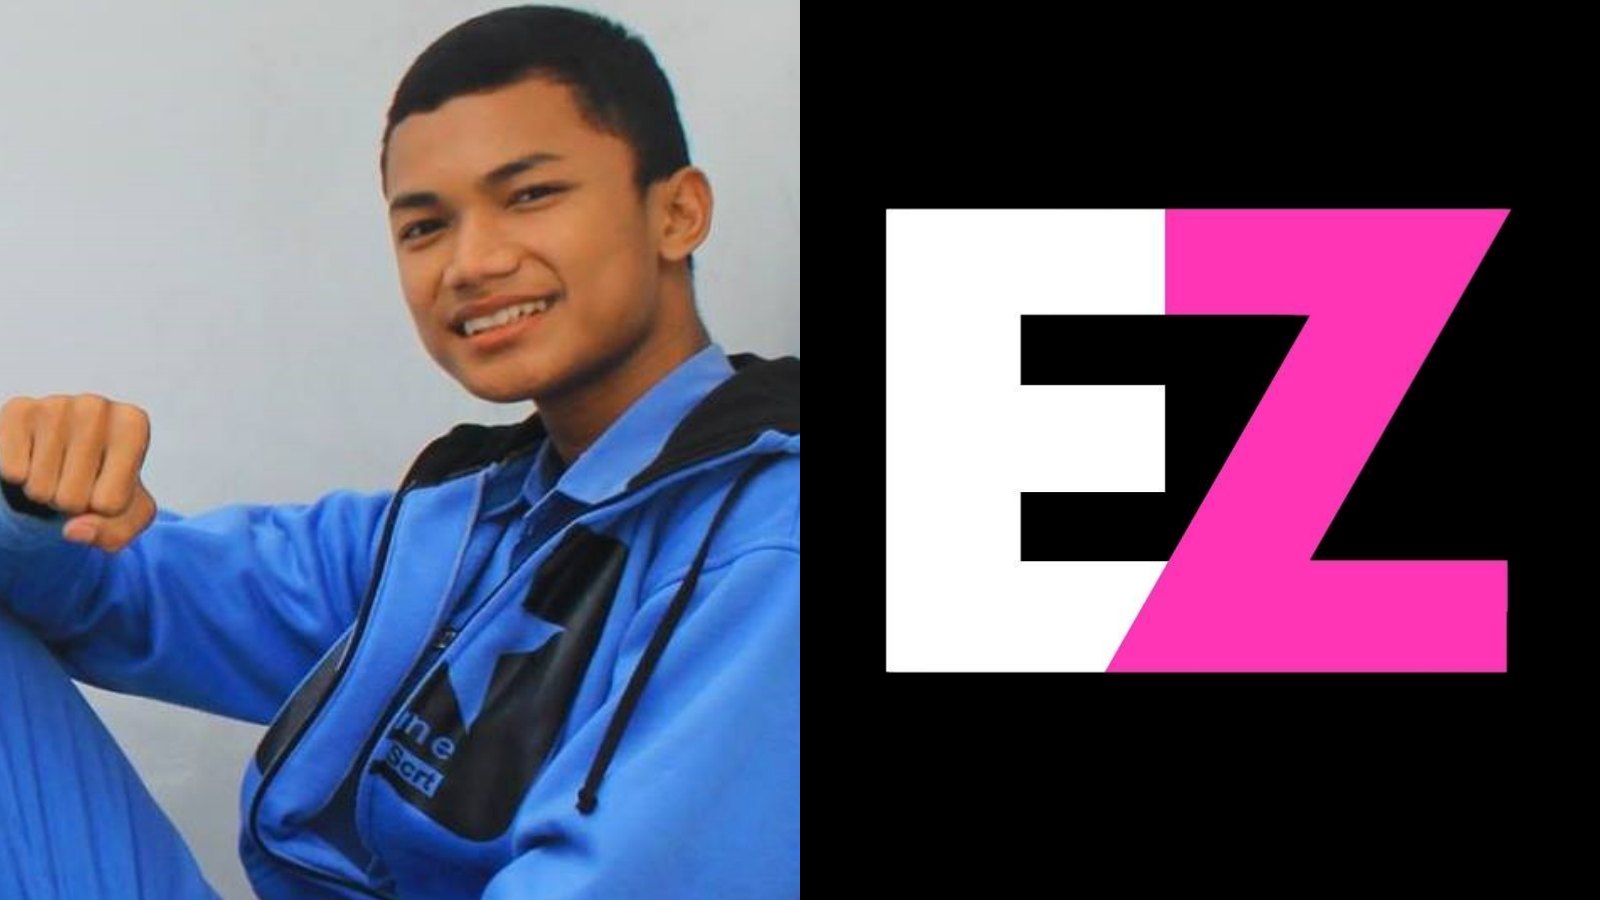 Fakta Profil Pratama Eriz, YouTuber Game Parody asal Nganjuk Jawa Timur yang Bikin Ngakak Gaes!